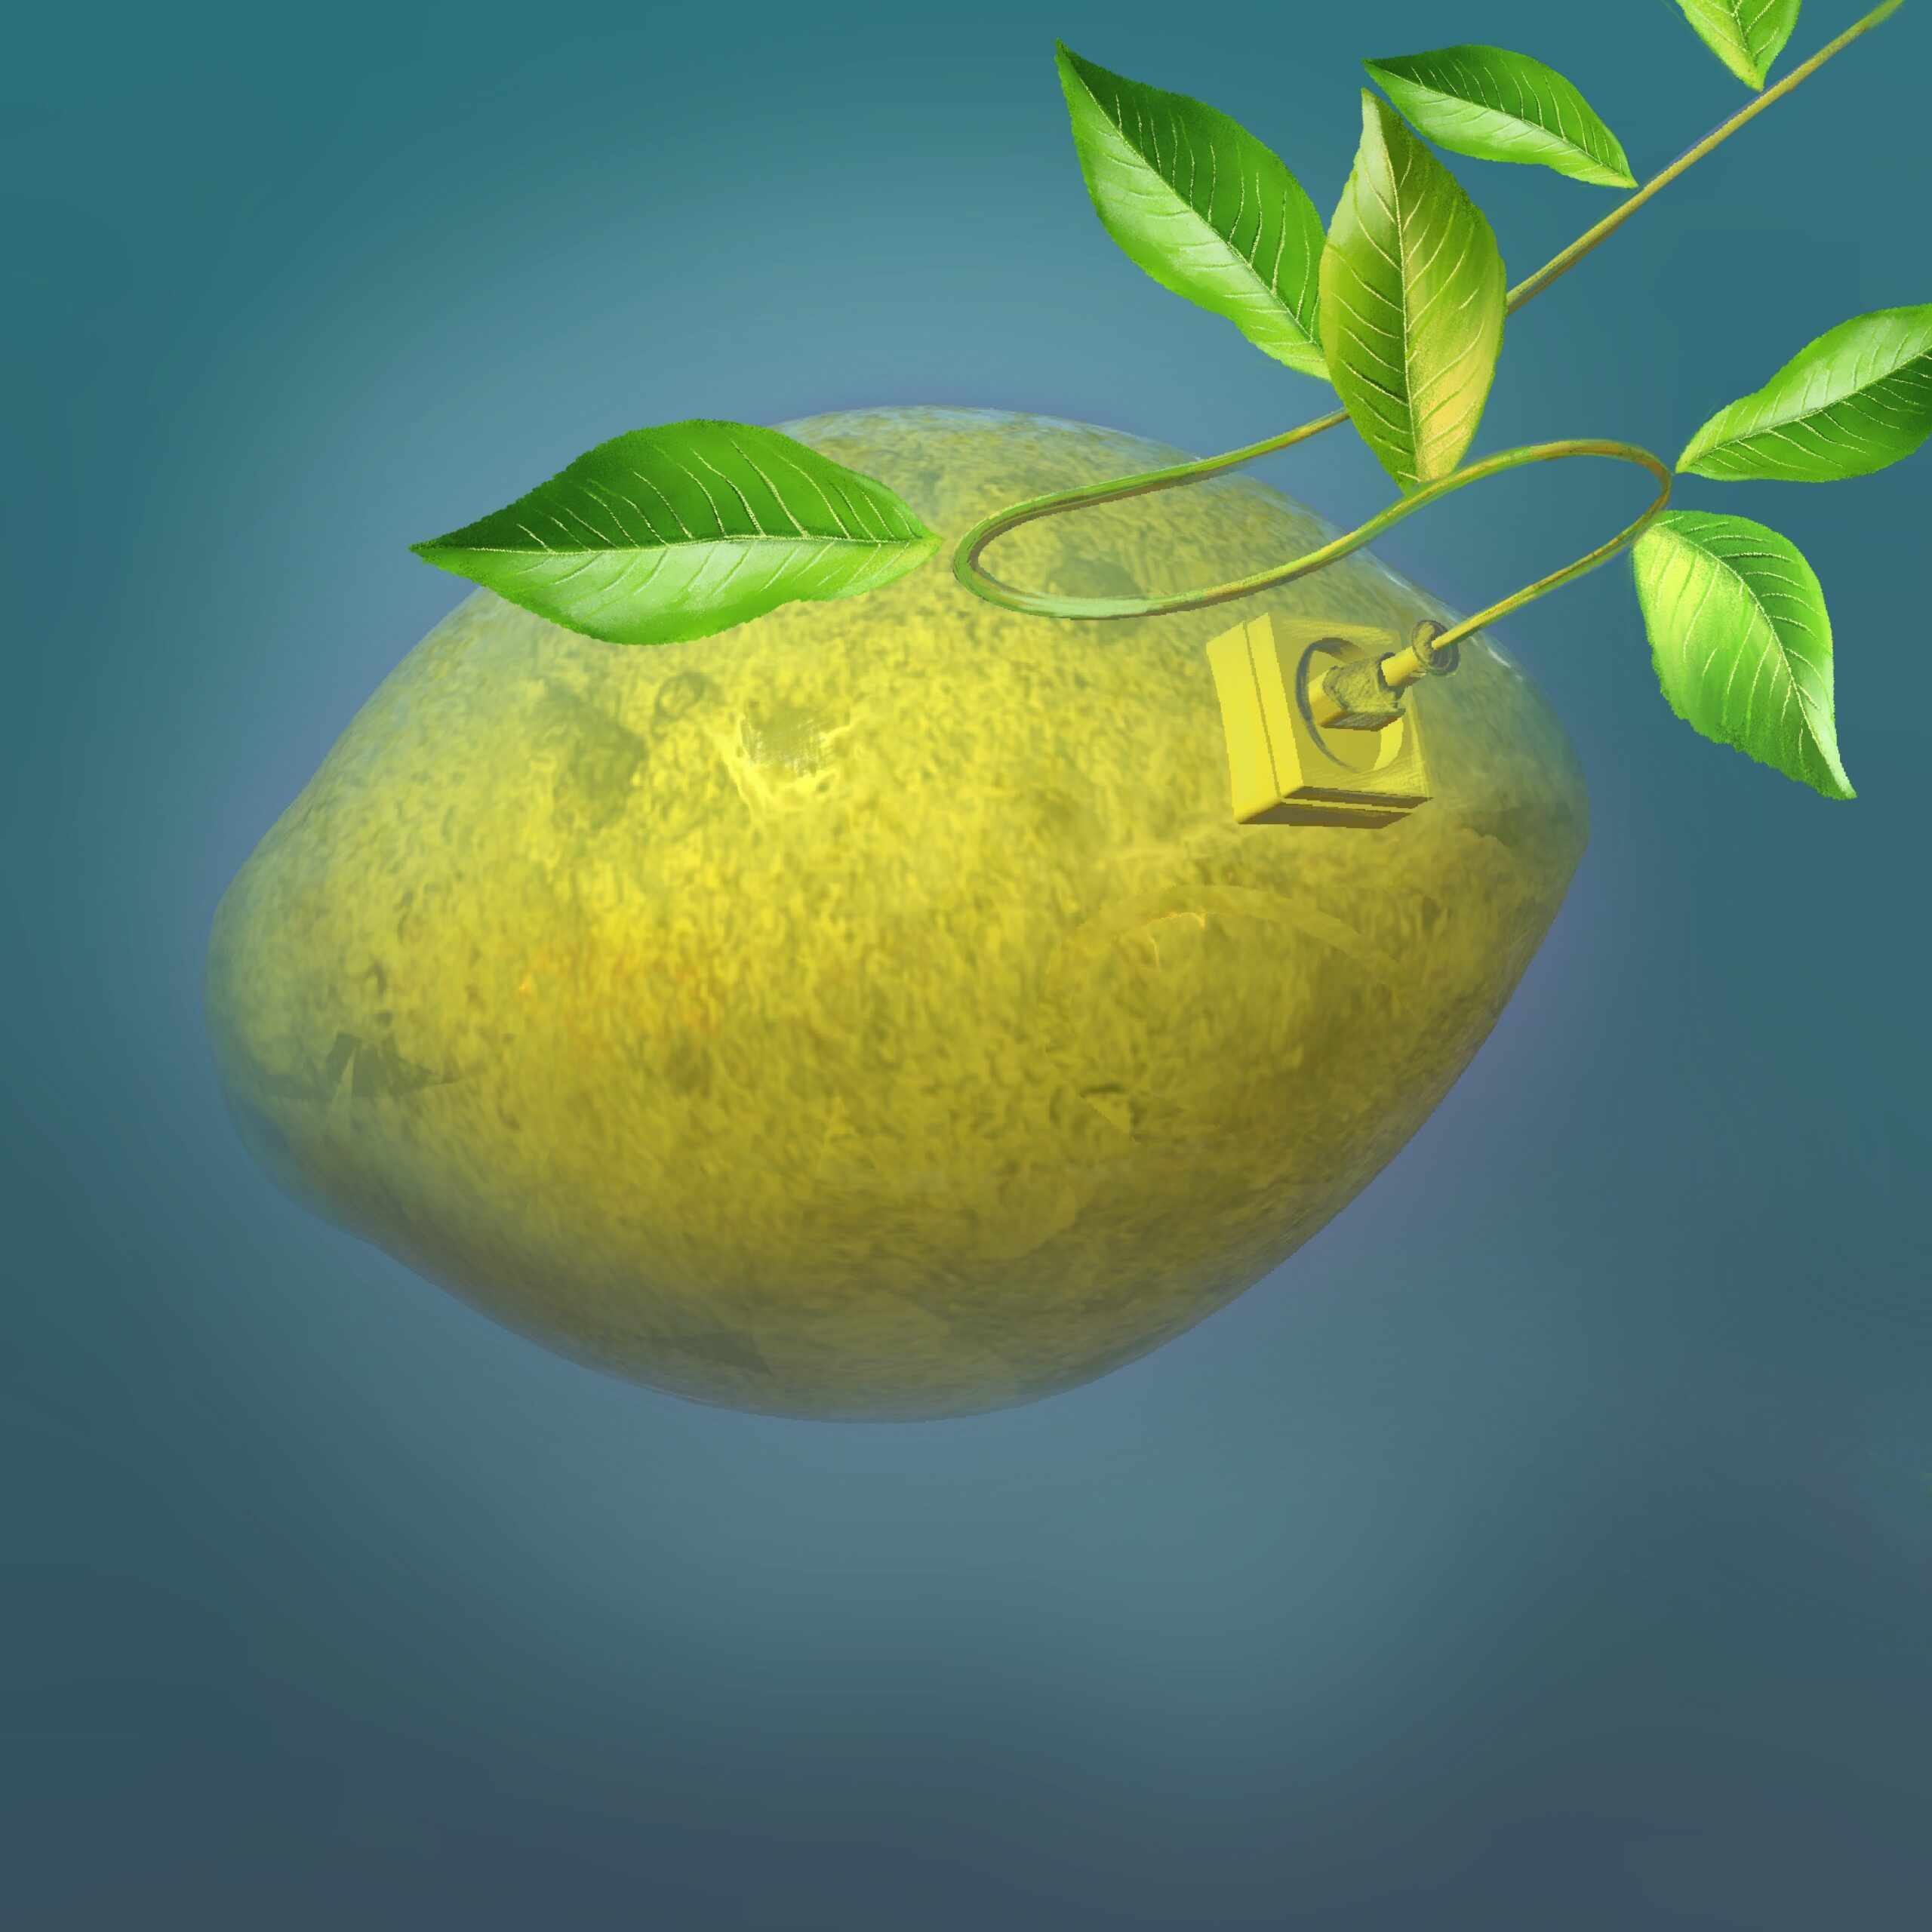 Digital art by crimson lemons